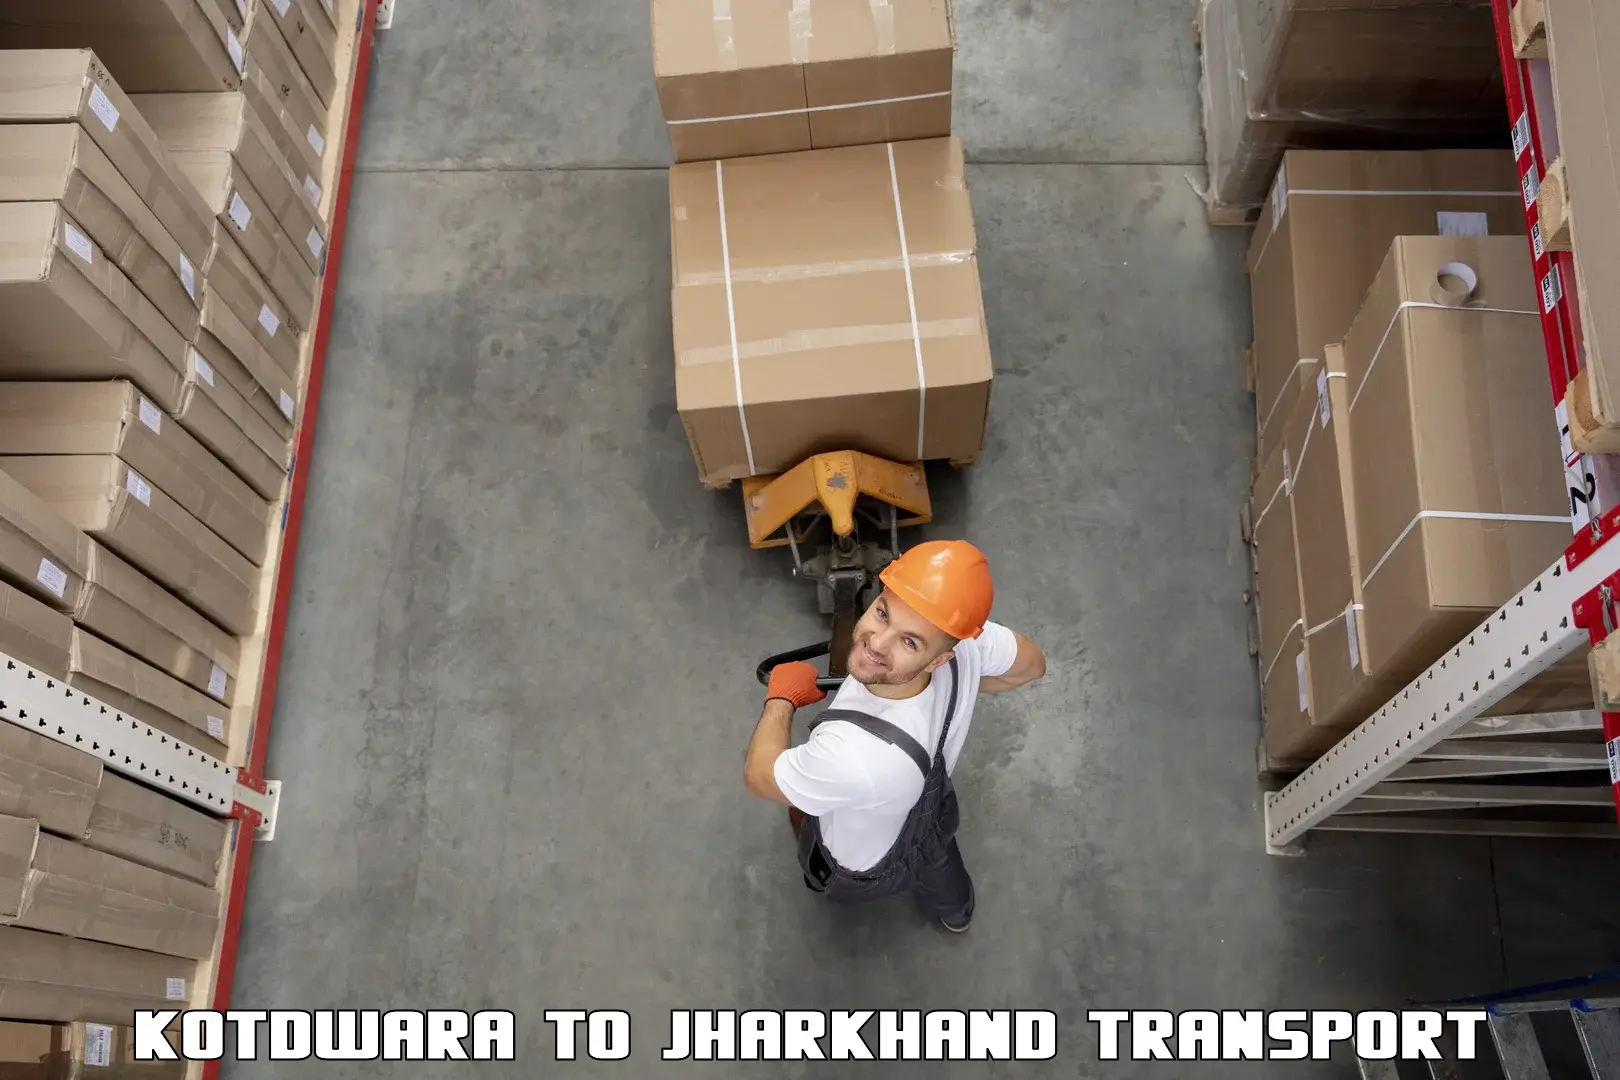 Cargo transportation services Kotdwara to Tamar